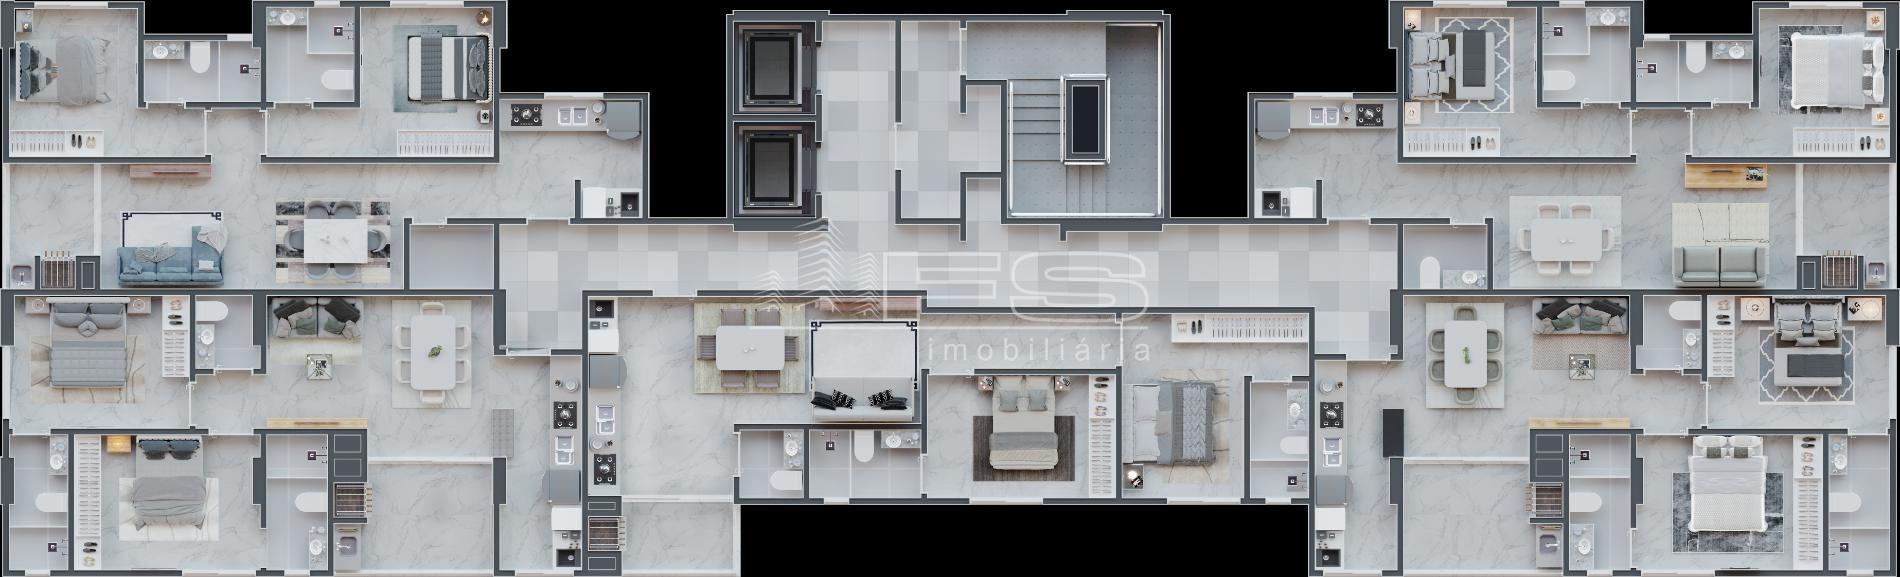 Apartamento com 2 Dormitórios à venda, 68 m² por R$ 606.268,00